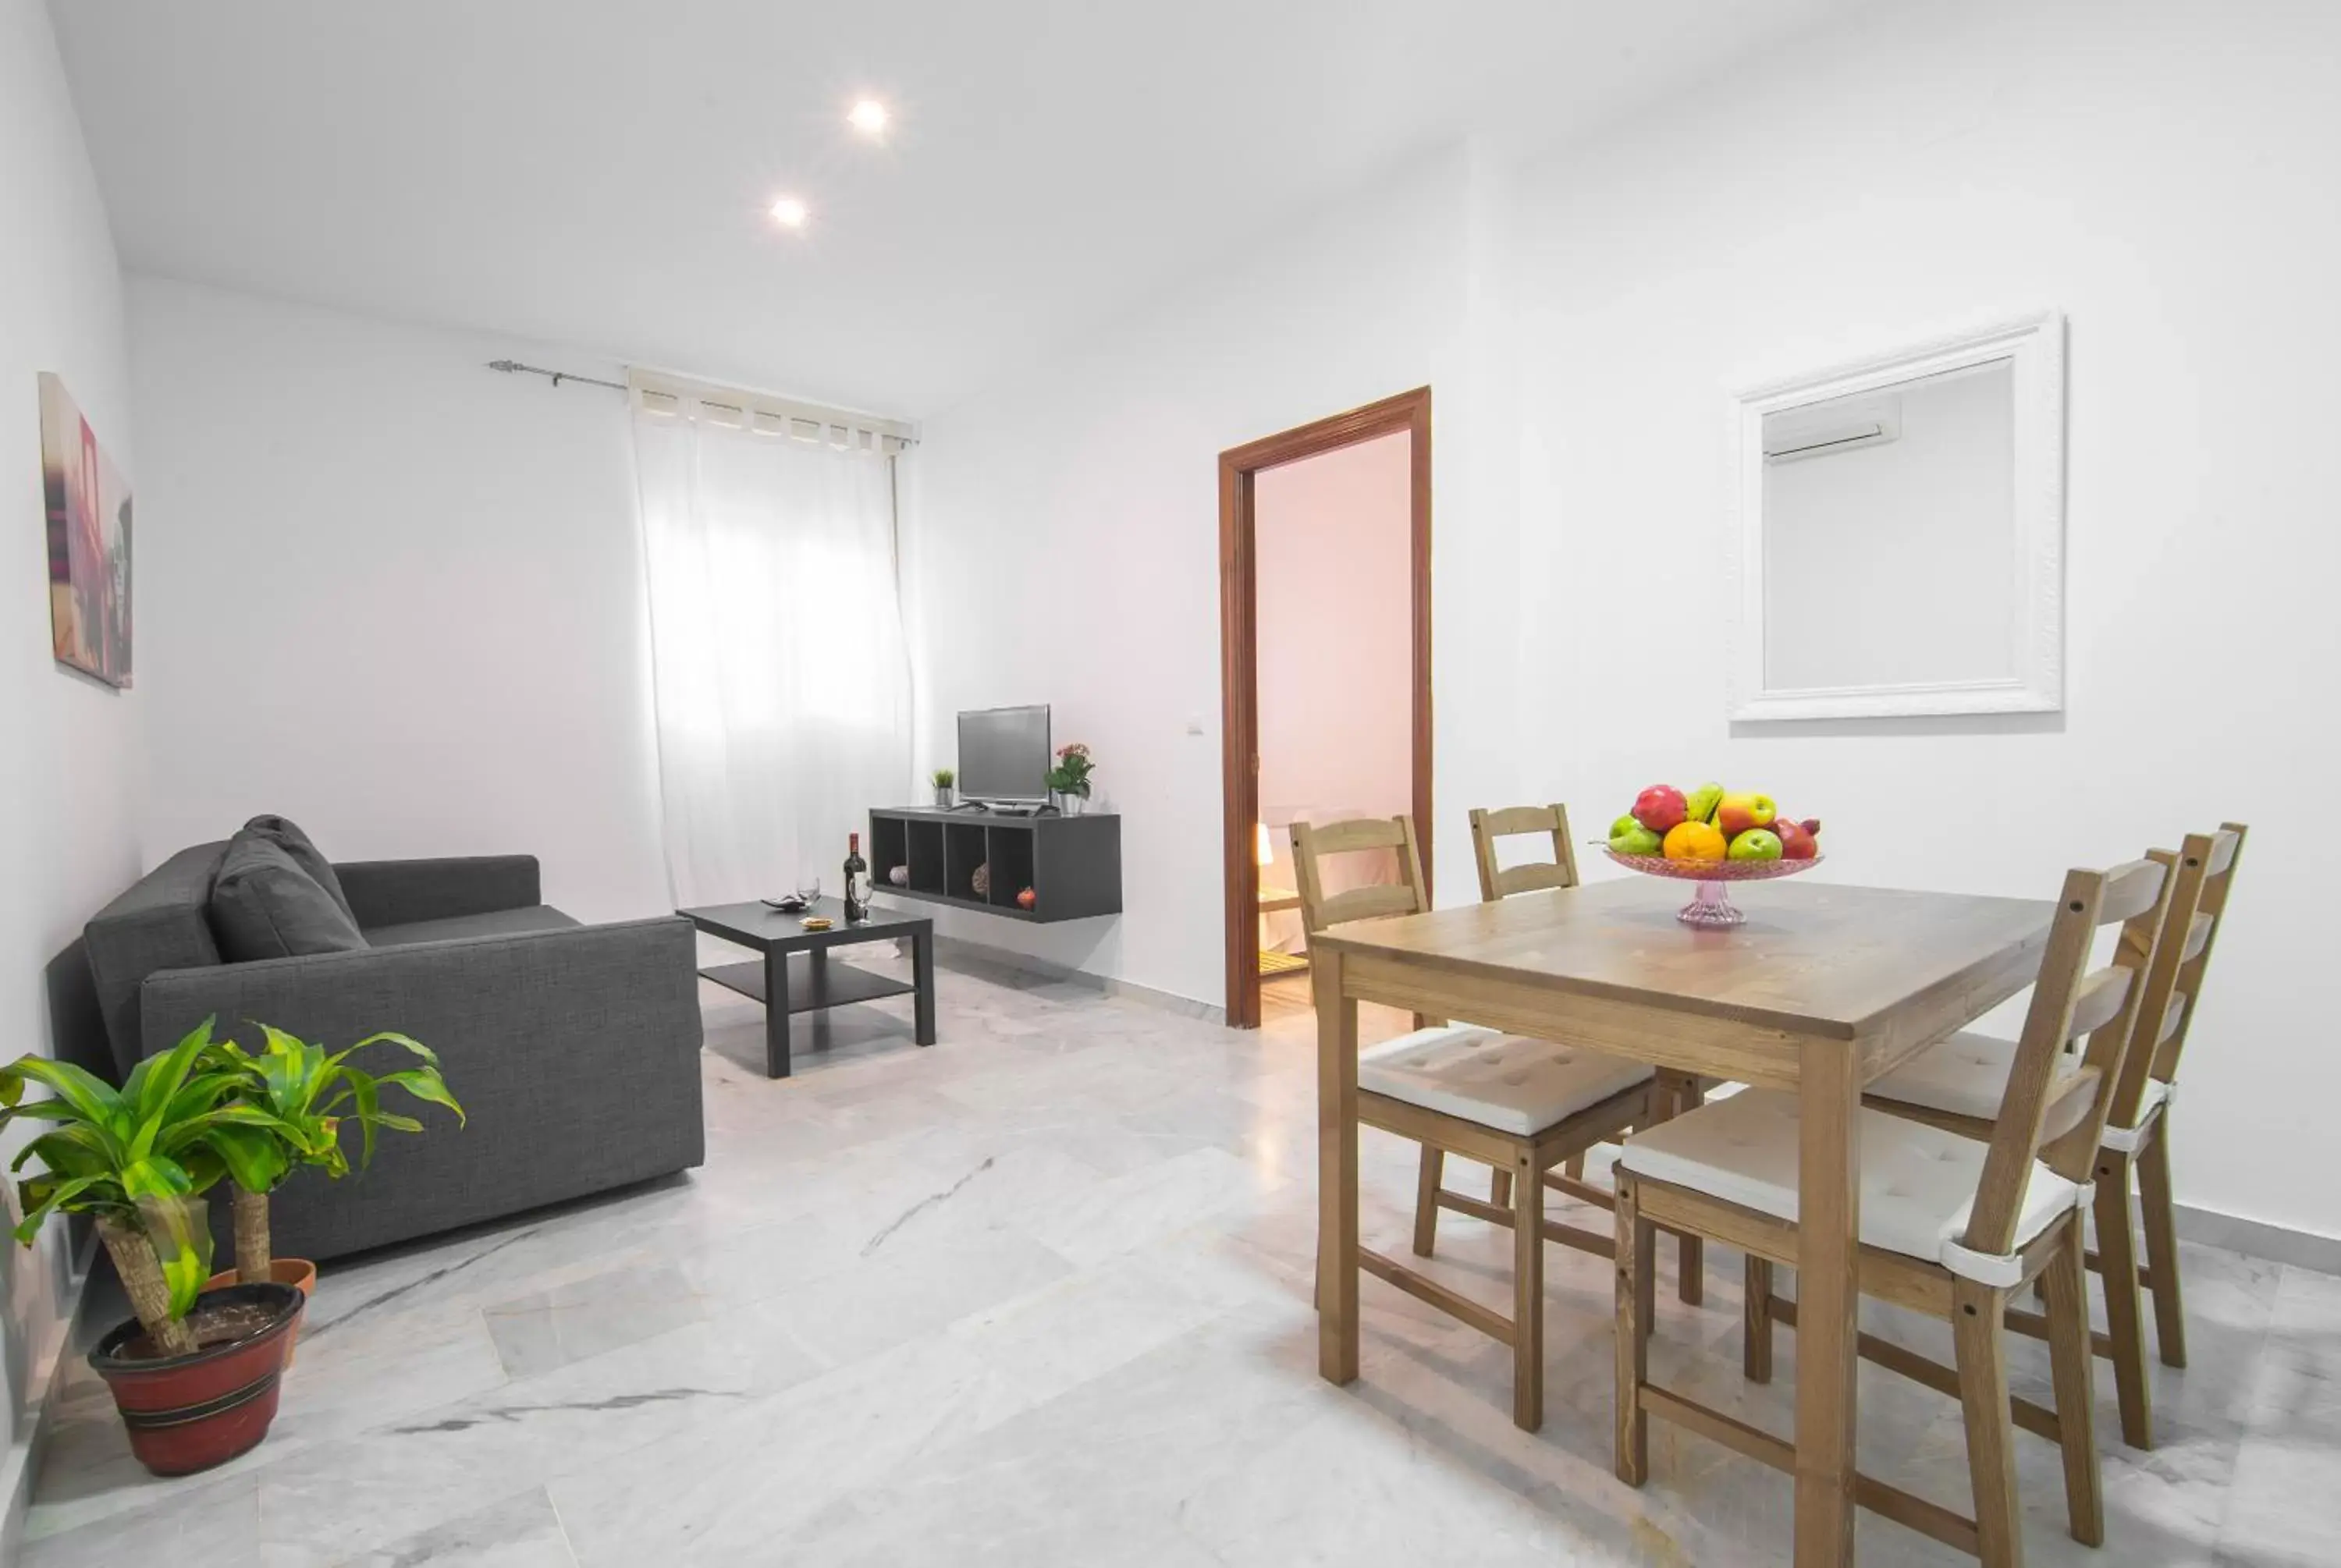 Seating area, Dining Area in Apartamentos Granata